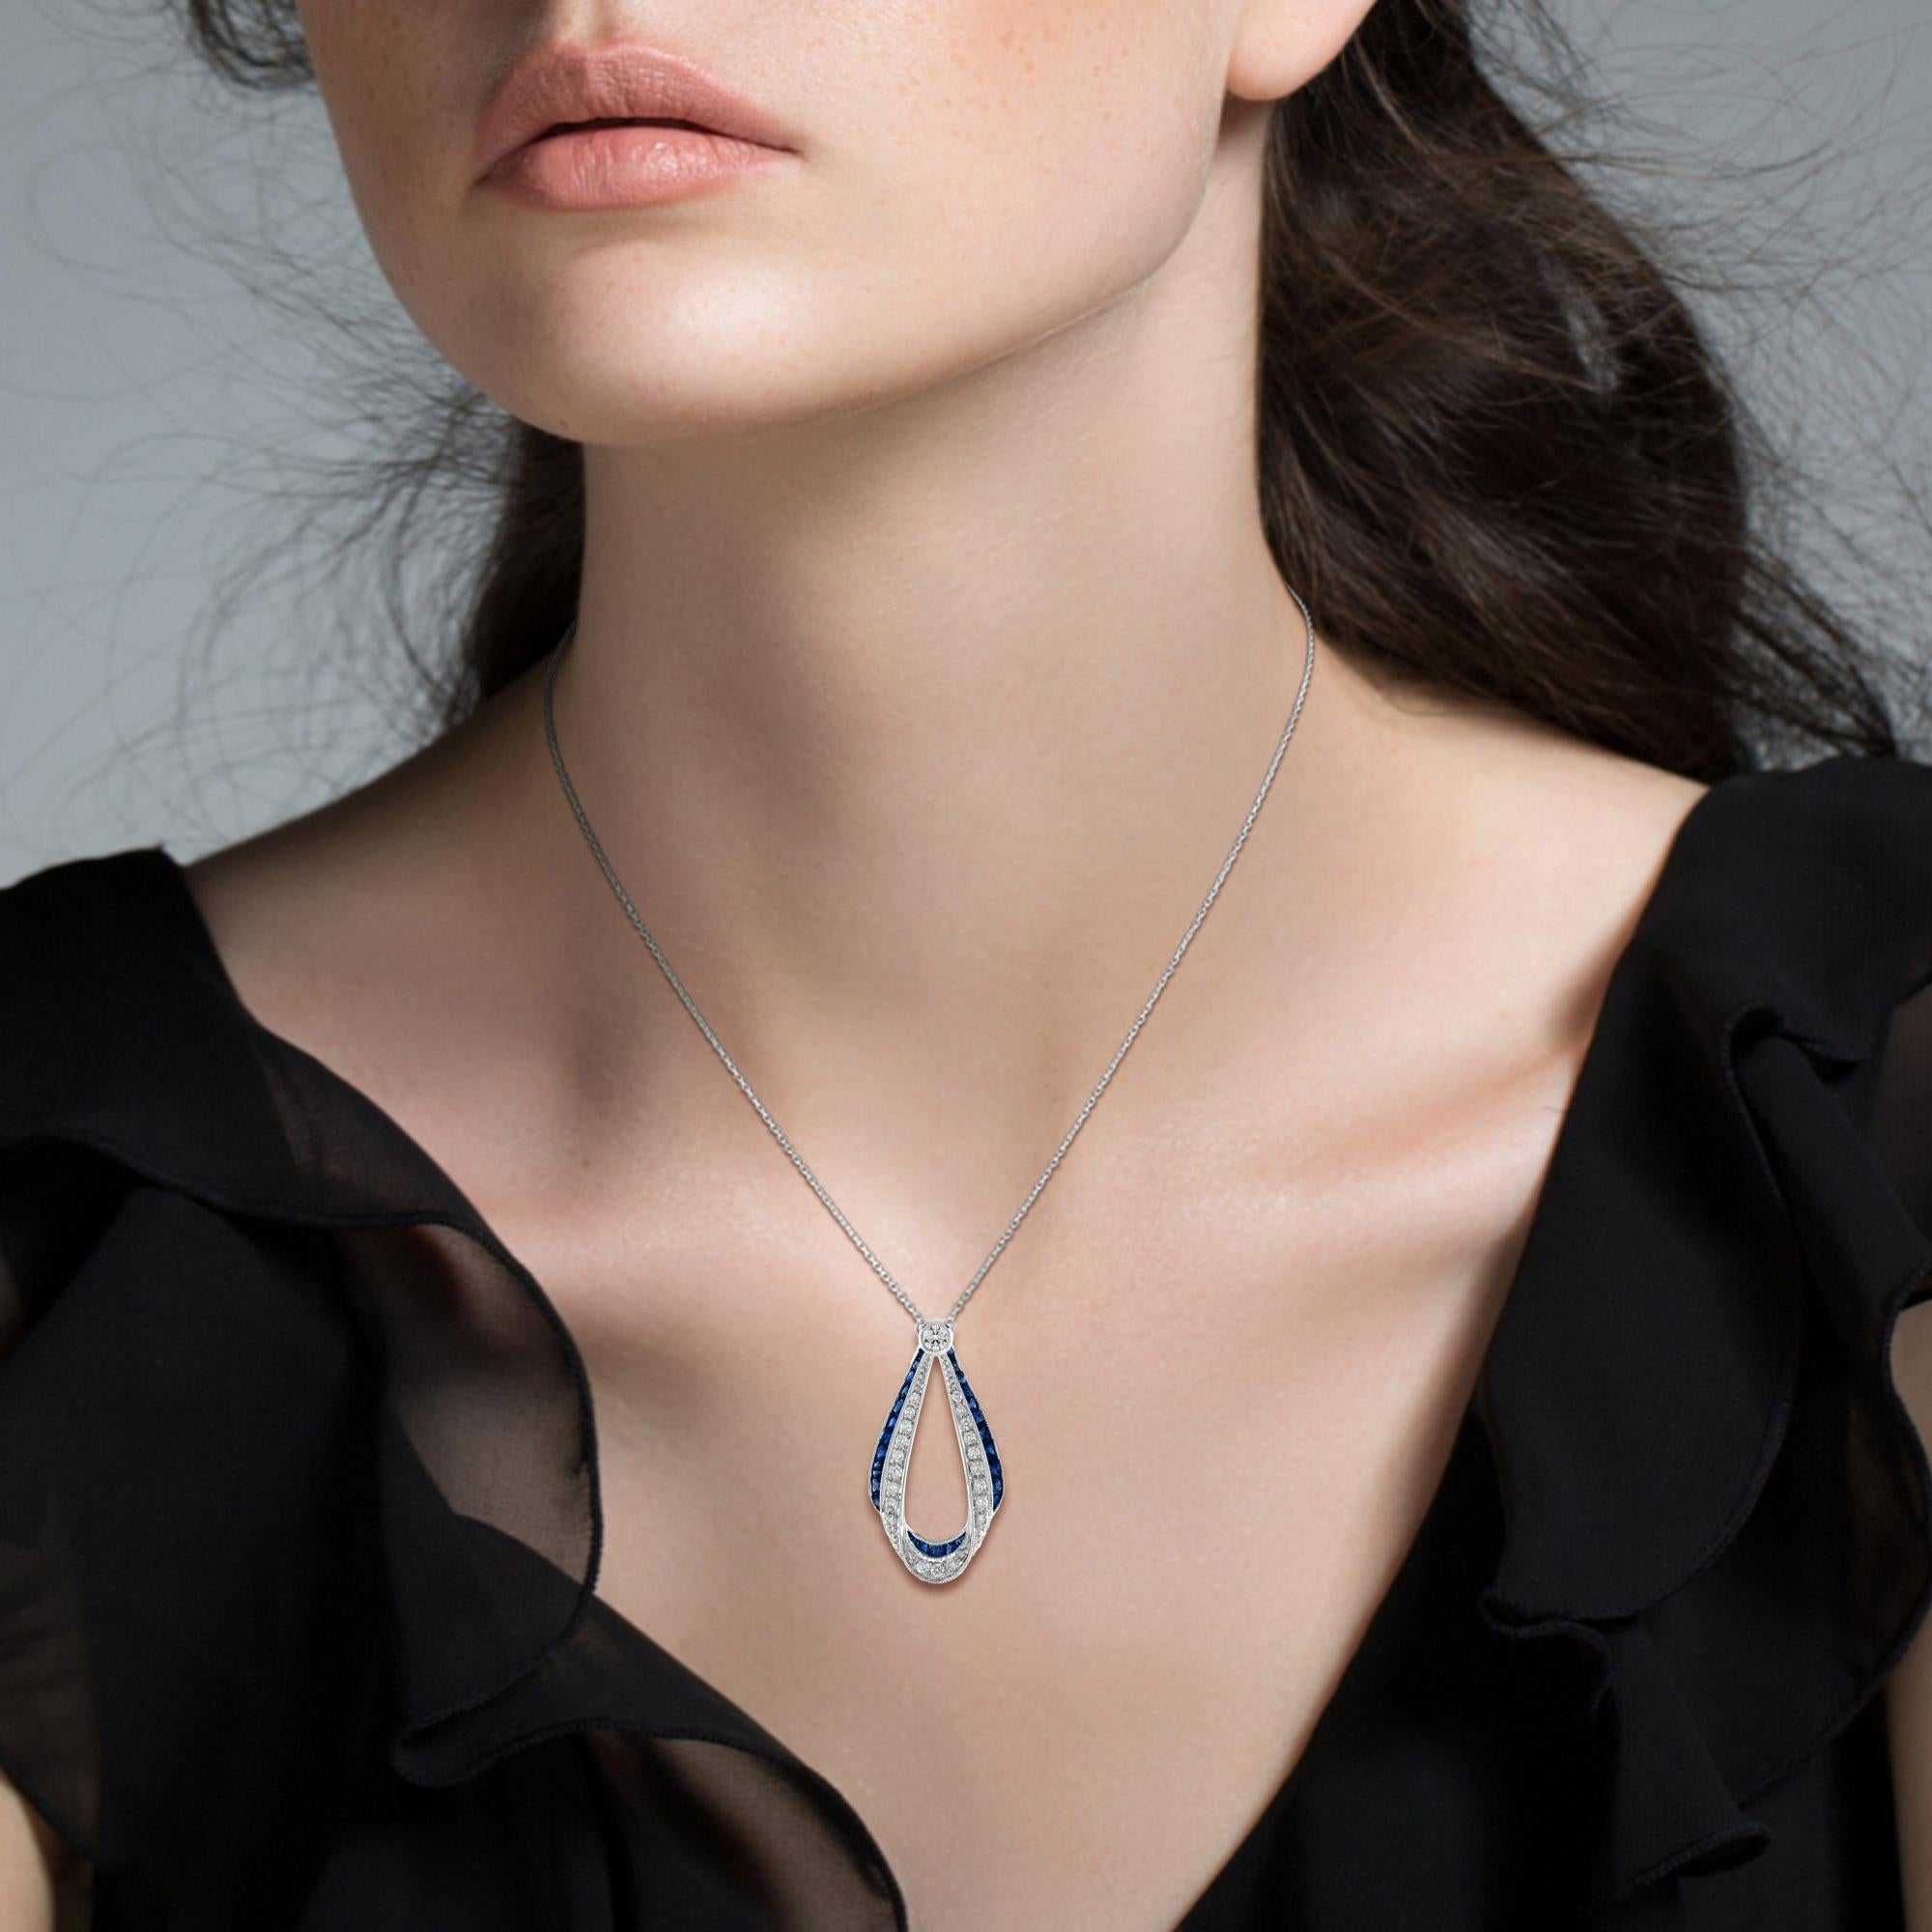 Diese Anhänger-Halskette im Art-Déco-Stil ist absolut atemberaubend und außergewöhnlich. Über 2 Karat lebhafte und außergewöhnliche blaue Saphire säumen den Rand des Anhängers. Und 0,43 Karat feine Diamanten. 
Die kunstvolle und präzise Verarbeitung